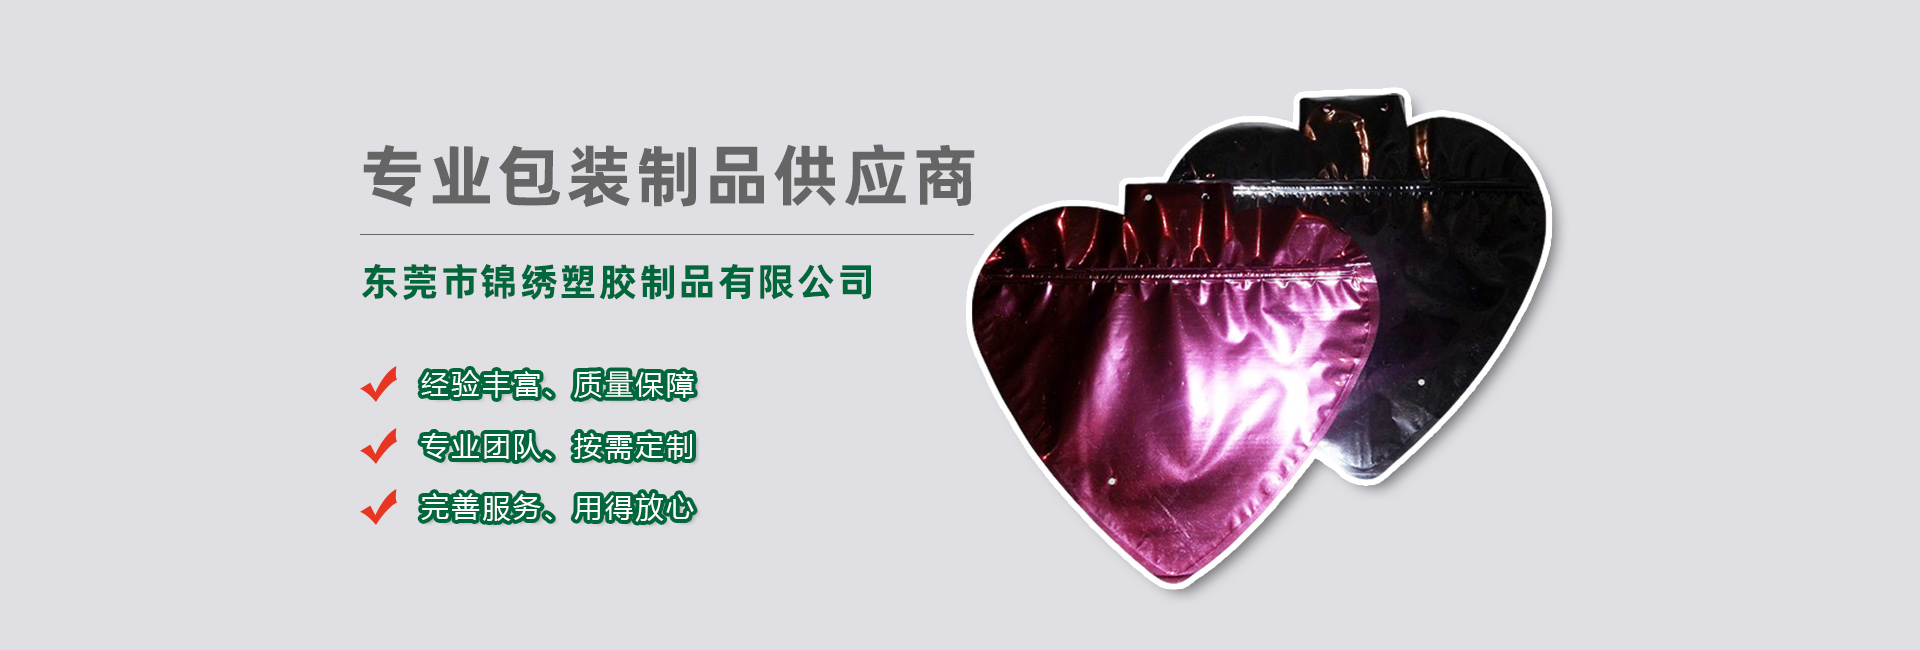 三明食品袋banner